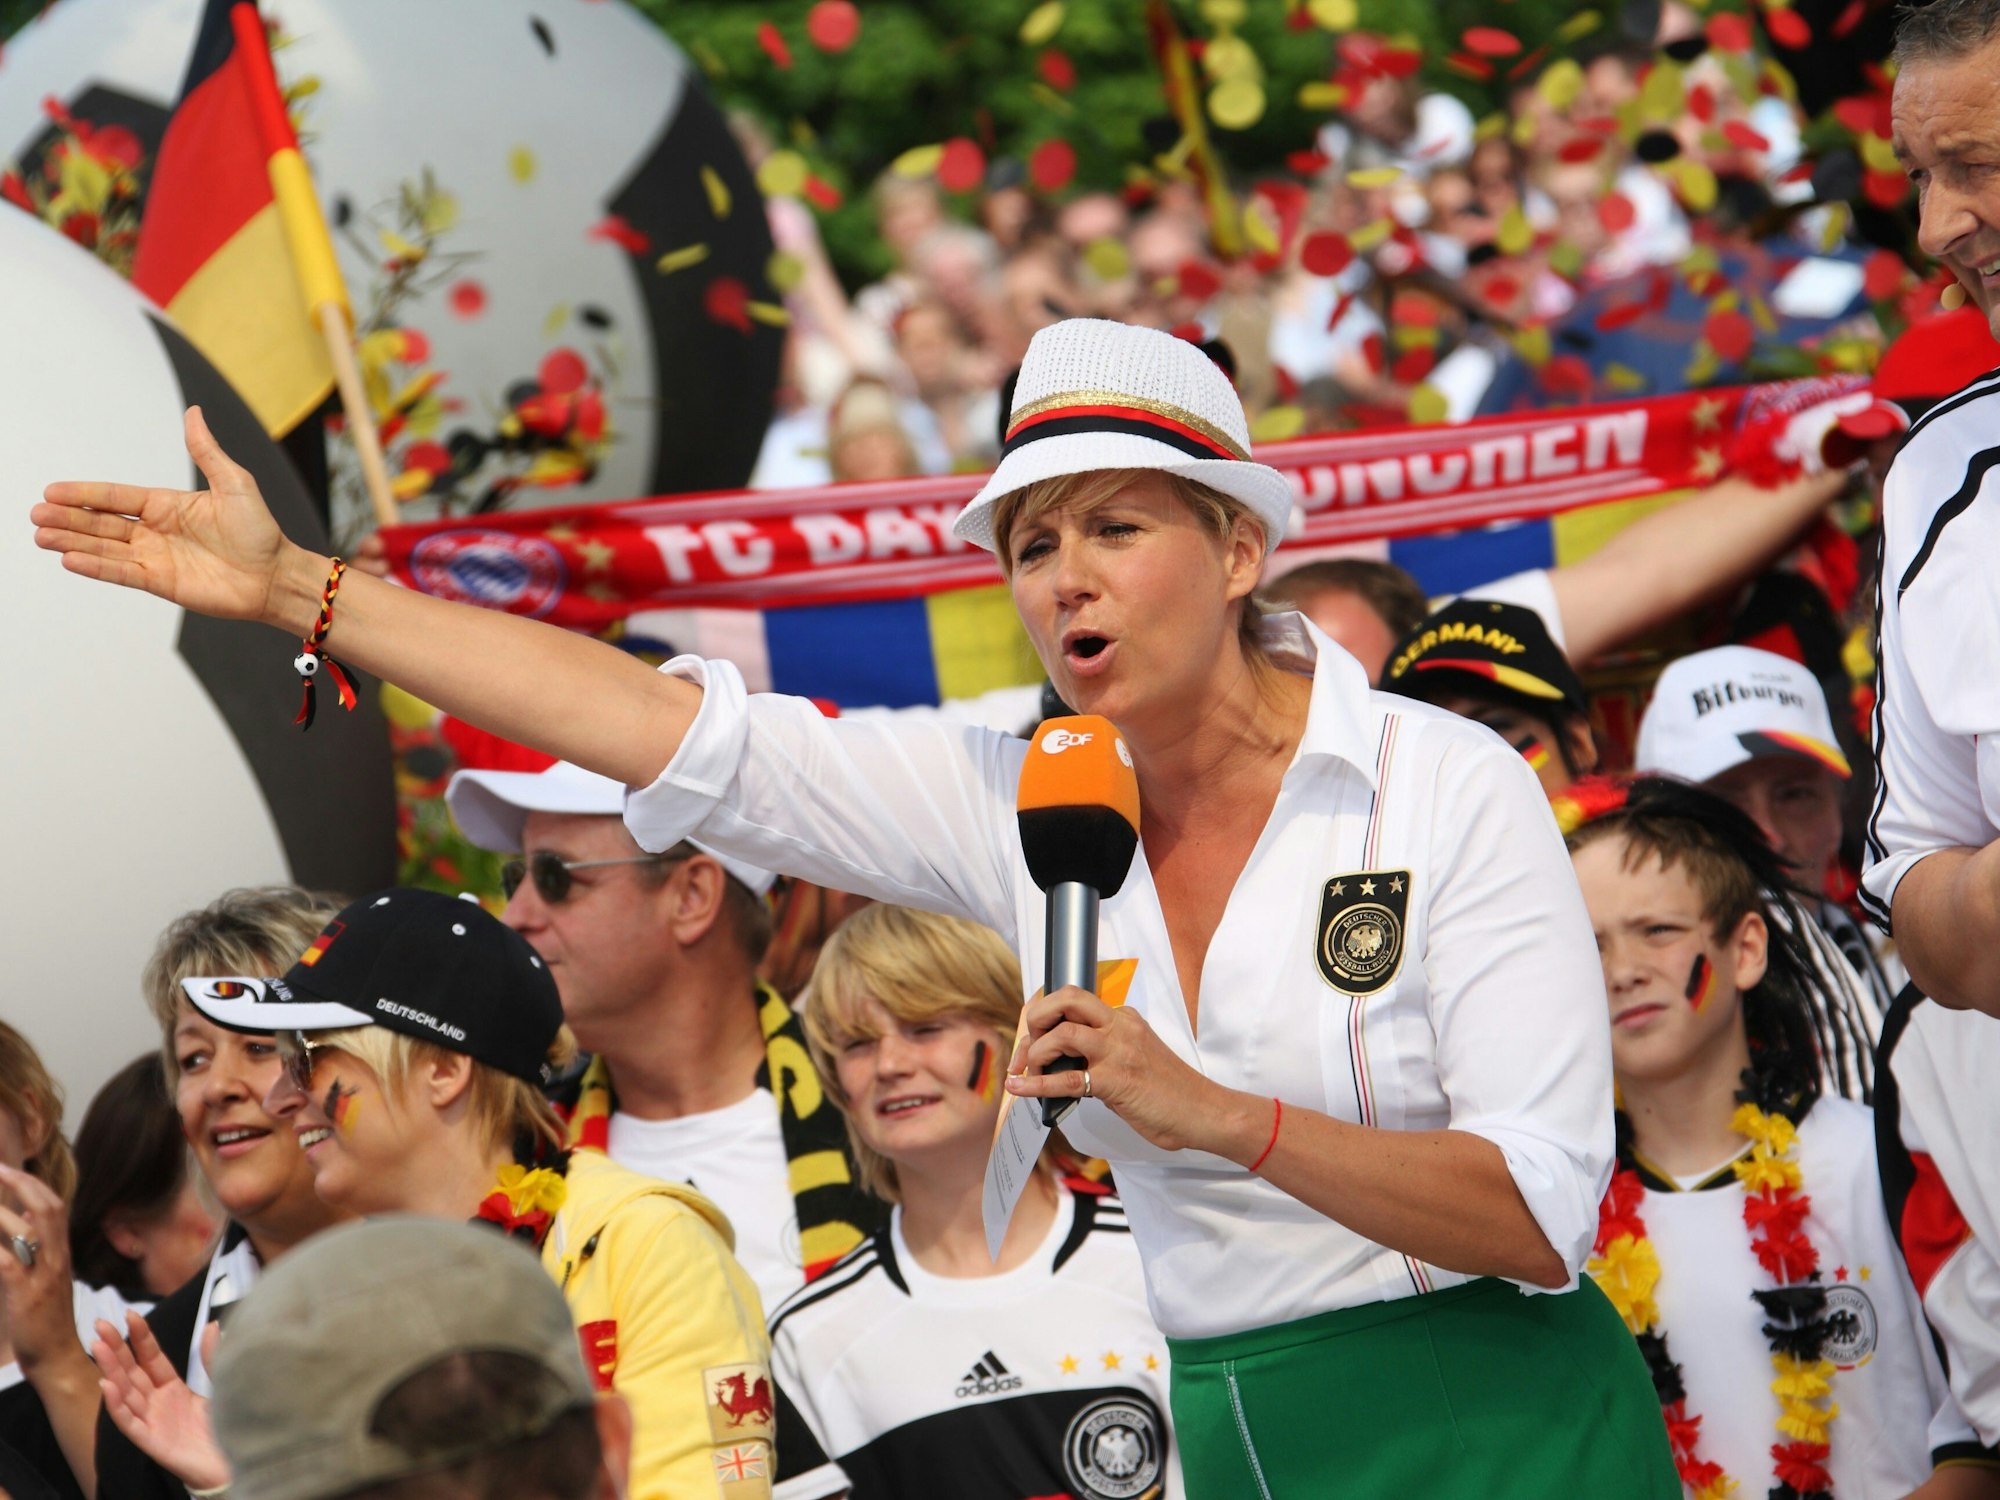 Das Handout vom 13.06.2010 zeigt Andrea Kiewel während ihrer Moderation des ZDF-Fernsehgartens in Mainz.